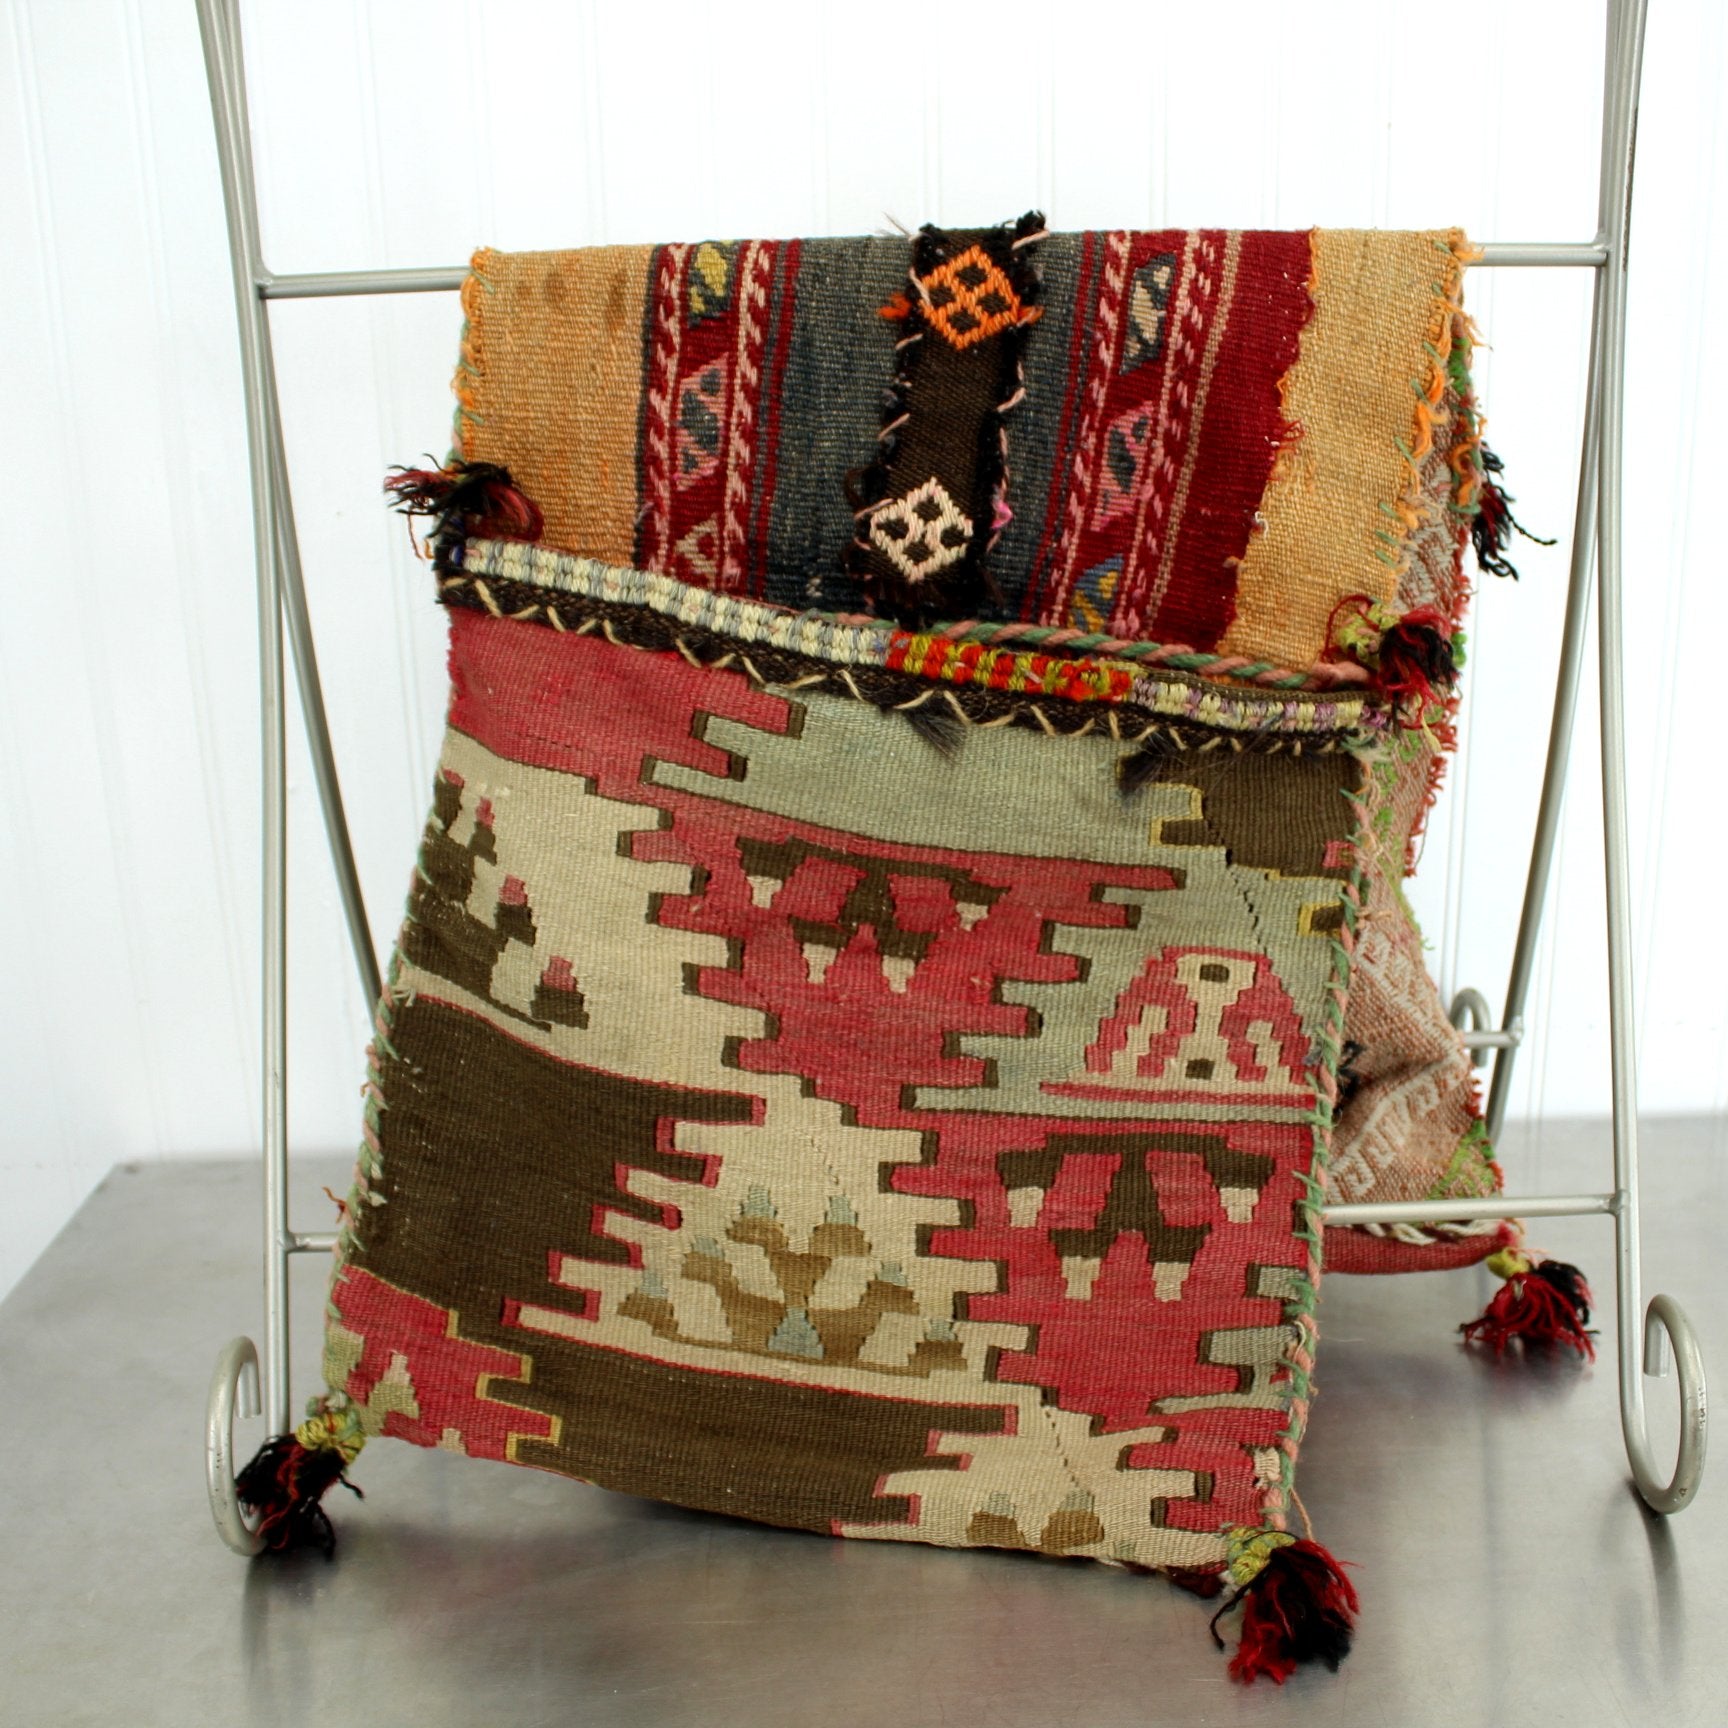 Old Camel Saddle Bag Kilim Hand Woven Used Shabby Authentic Decor Item